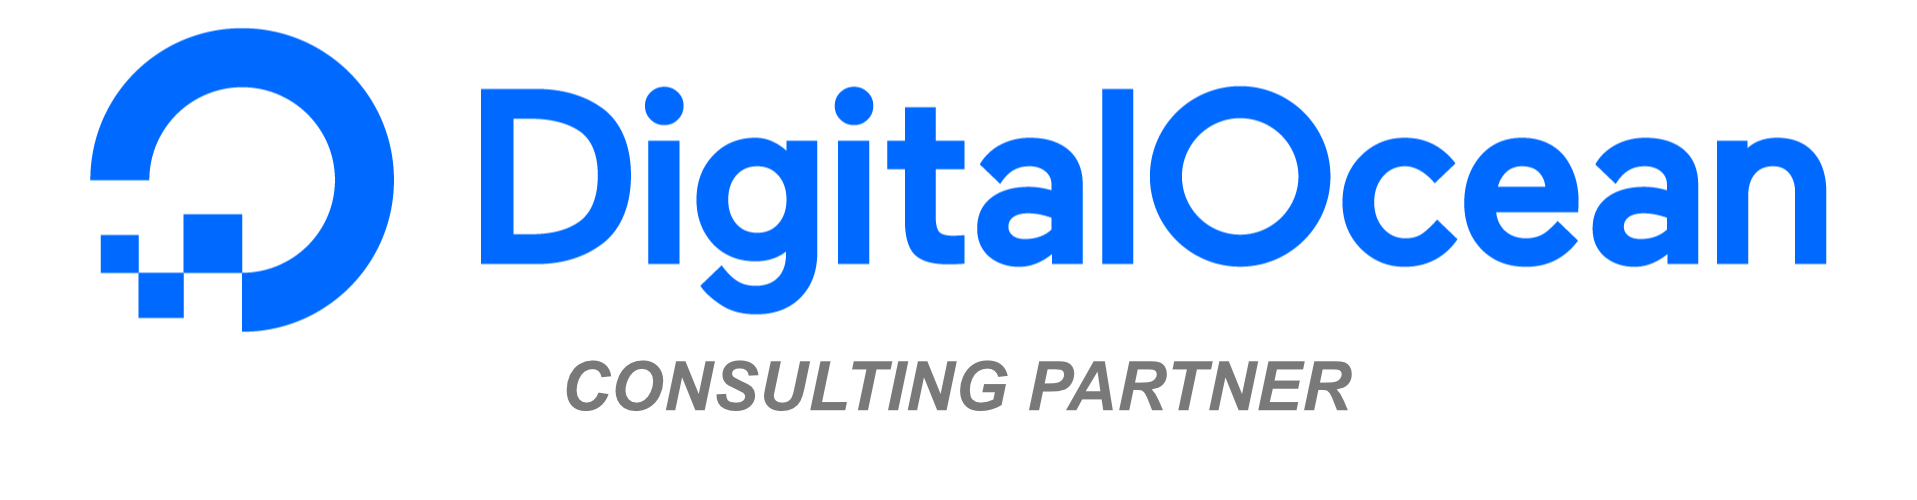 Digital Ocean Consulting Partner Logo